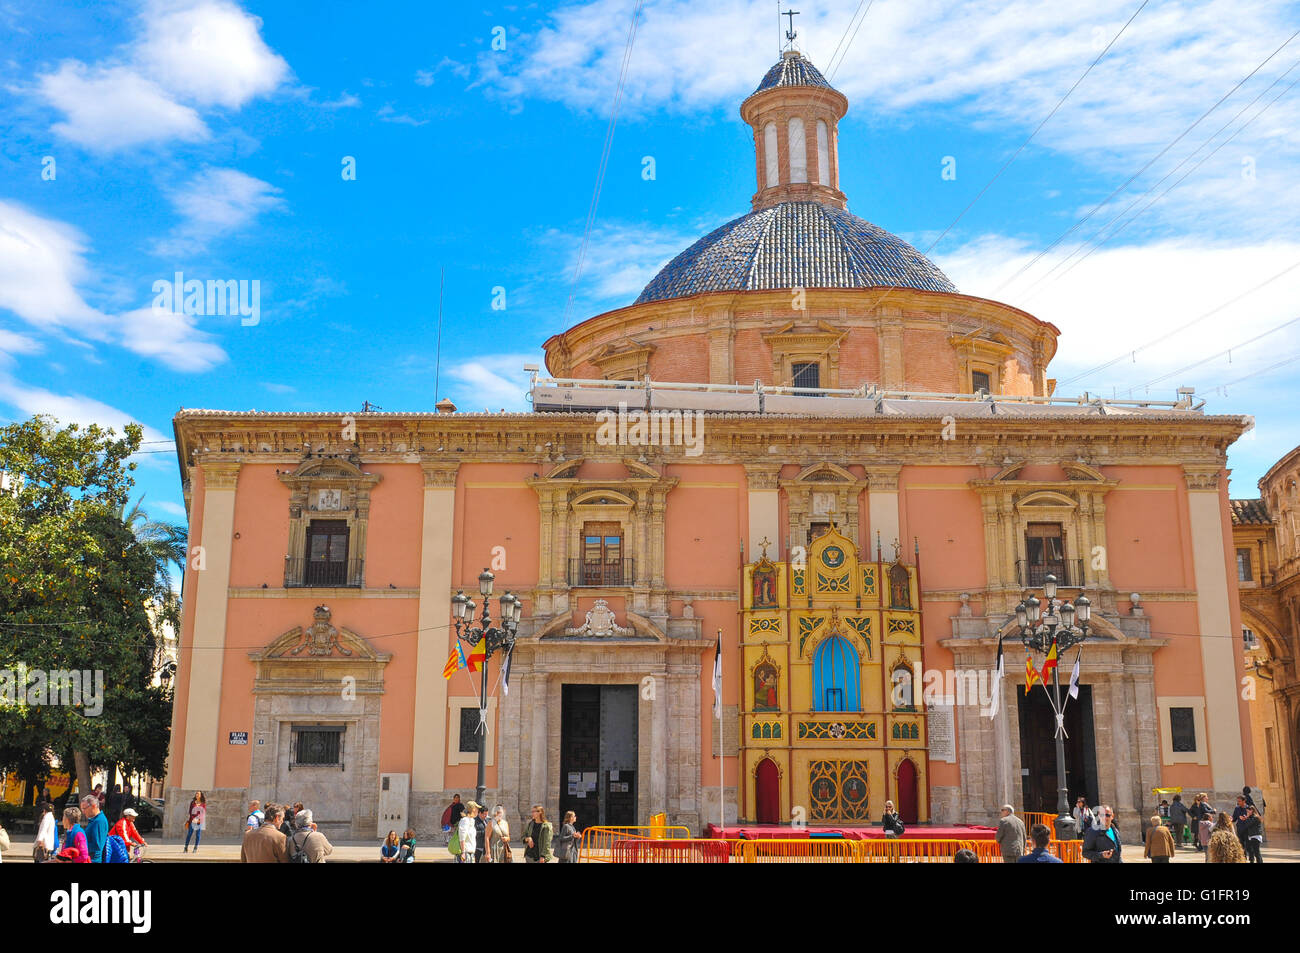 Valencia, Espagne - 30 mars 2016 : Vue de la cathédrale Saint Mary donnant sur la place principale de Valence, la troisième taille populatio Banque D'Images